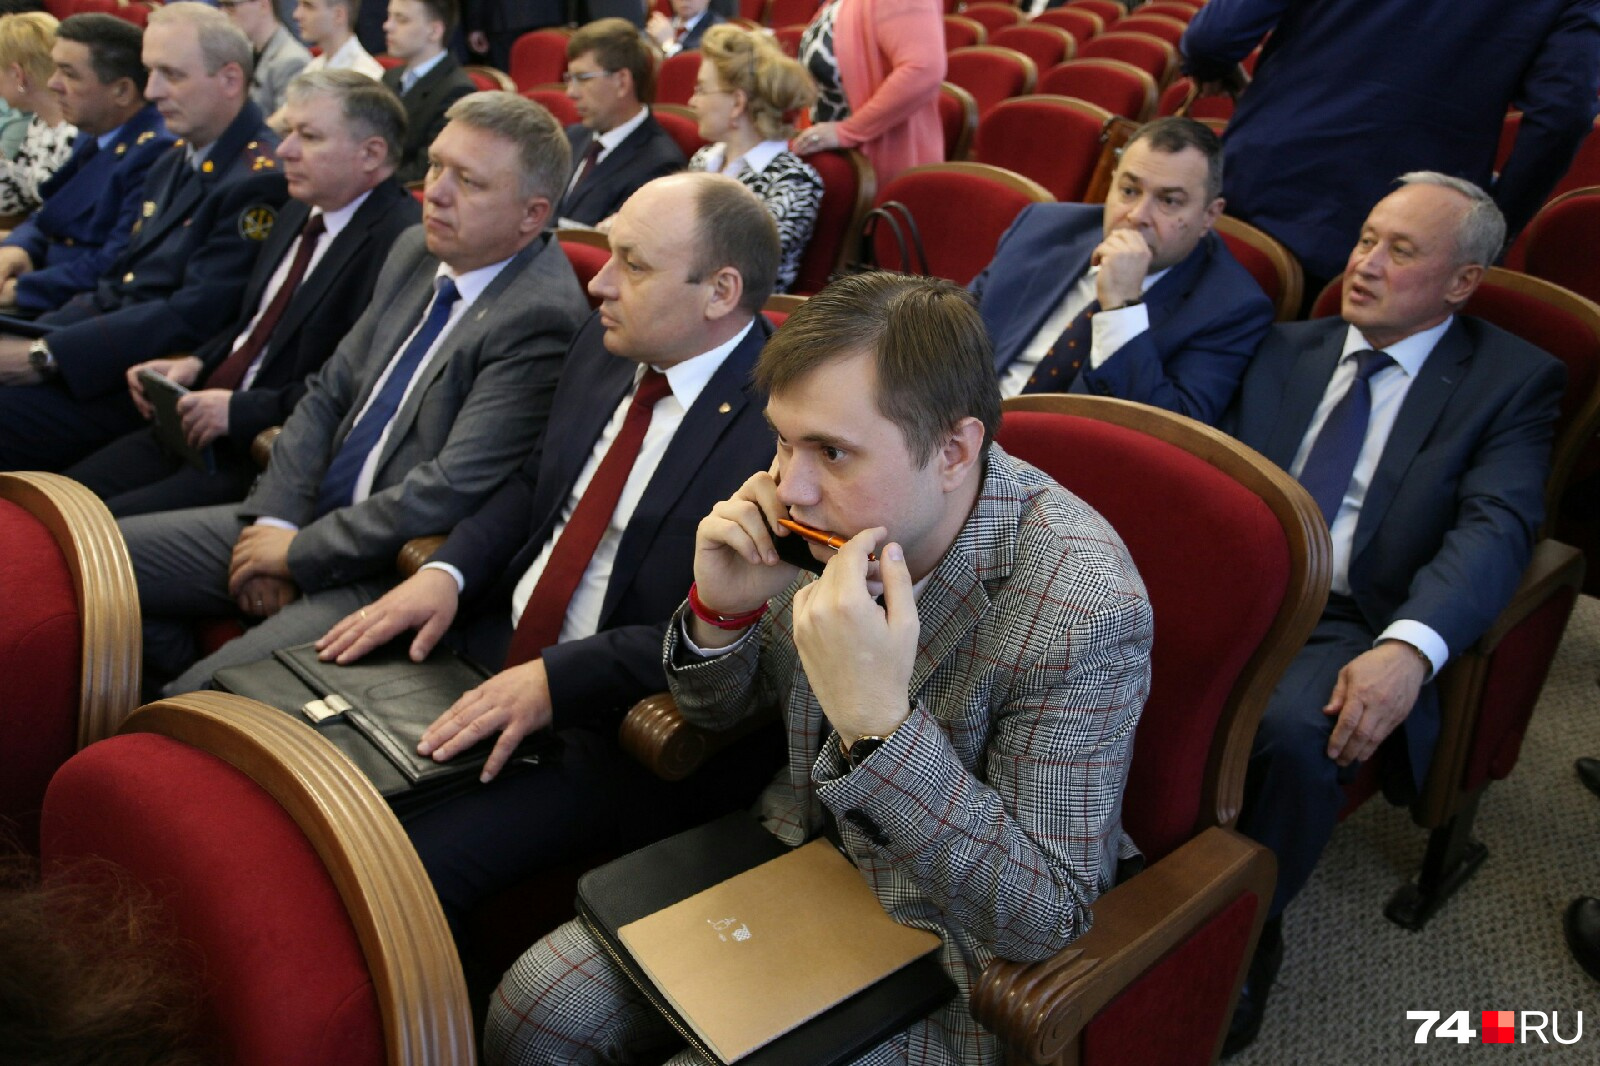 Начальник управления просвещения Минэкологии Виталий Безруков (как всегда в ярком образе) использует последние минуты перед началом послания на телефонные переговоры